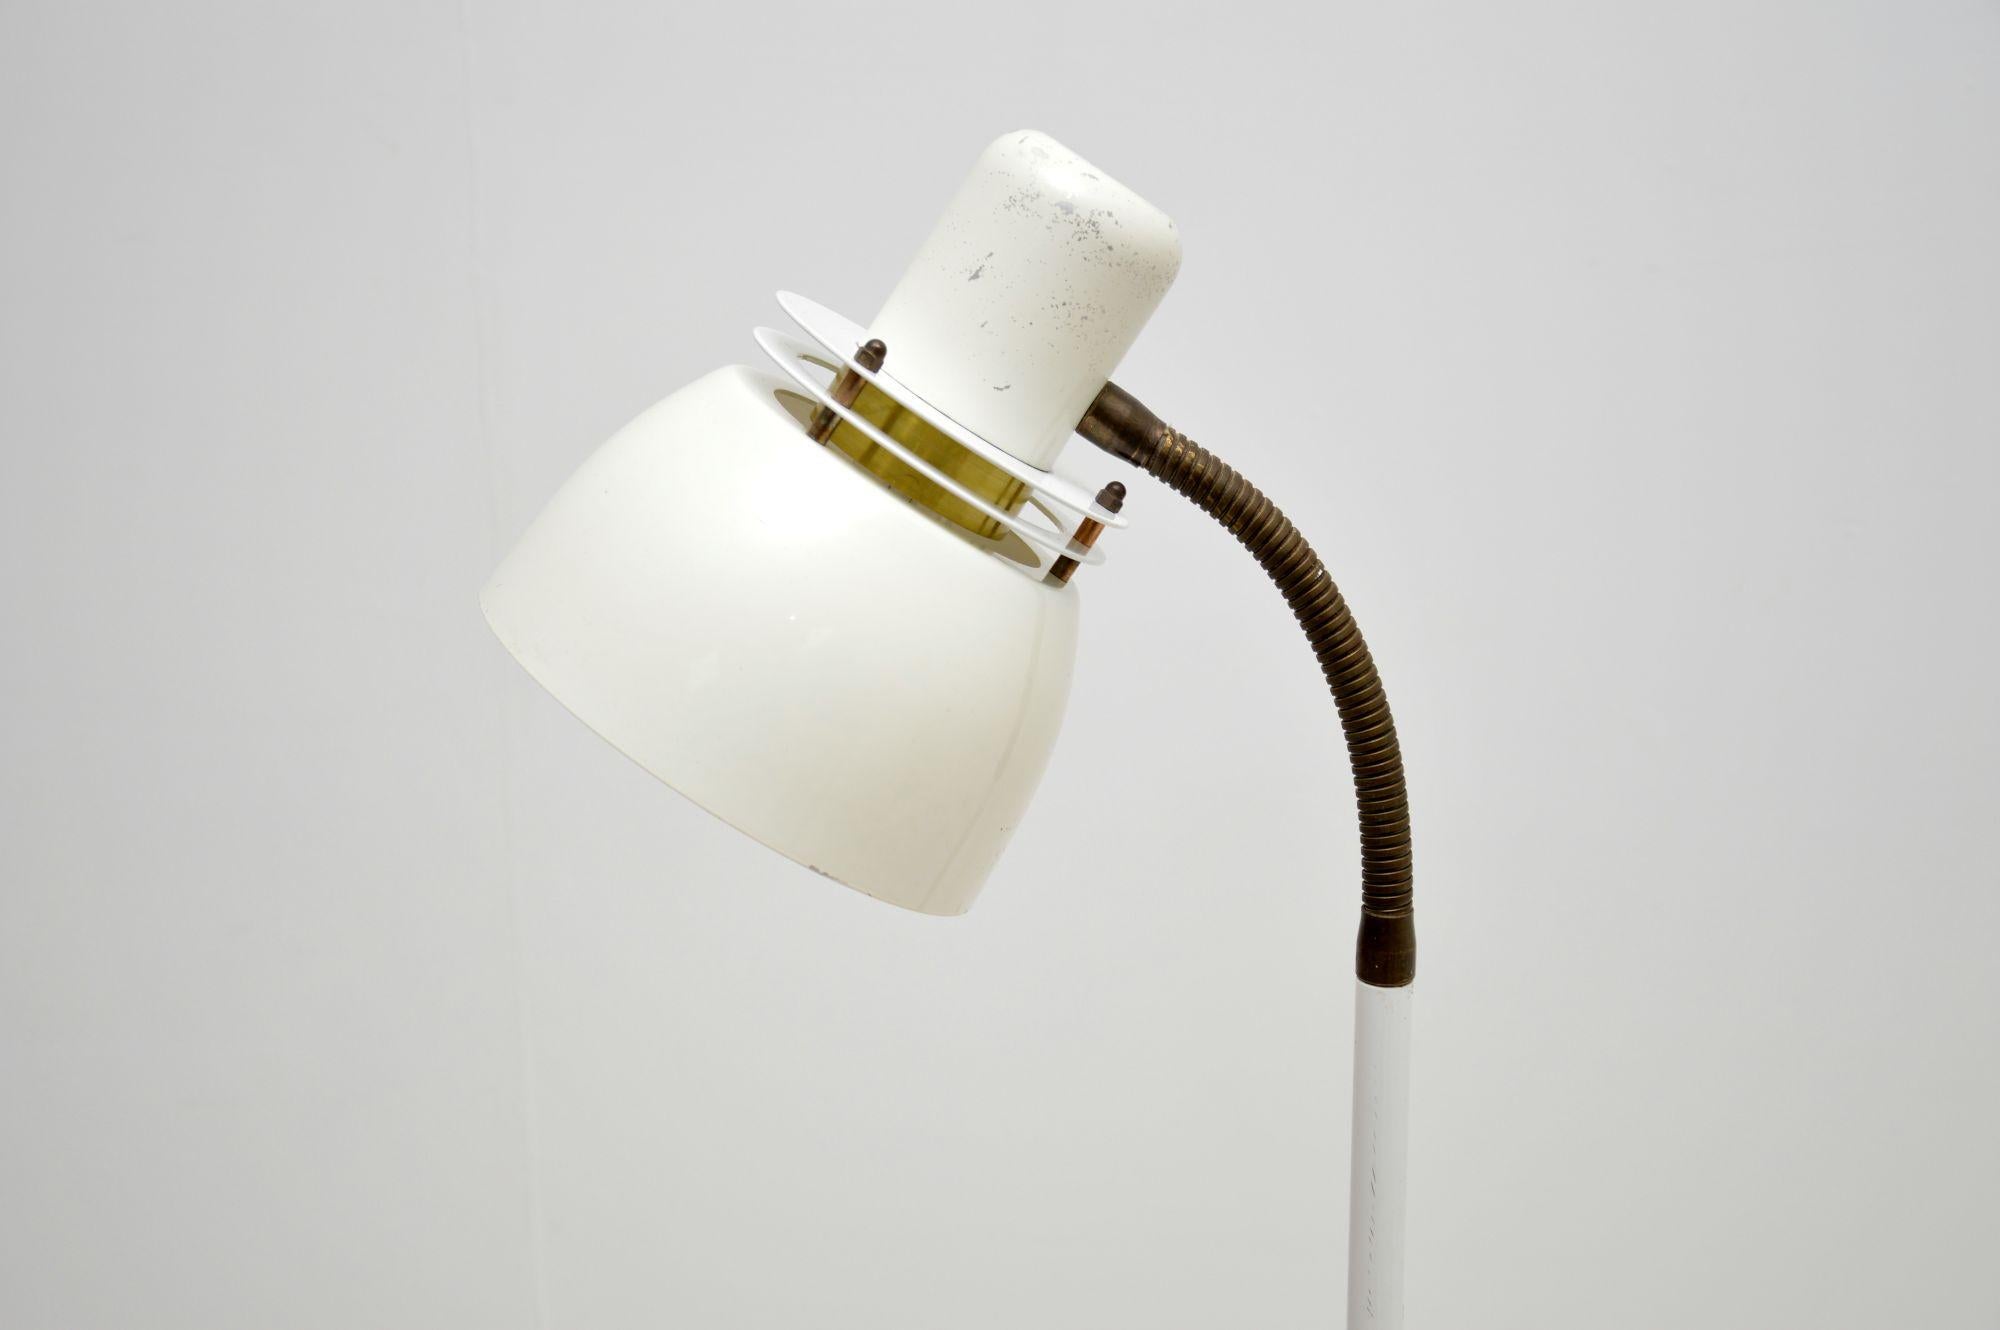 Un lampadaire suédois vintage élégant et extrêmement bien fabriqué par Belid. Fabriqué en Suède, il date des années 1970-1980.

La qualité est superbe, ce produit est magnifiquement conçu et est d'une taille utile. La lampe est finie en blanc, avec